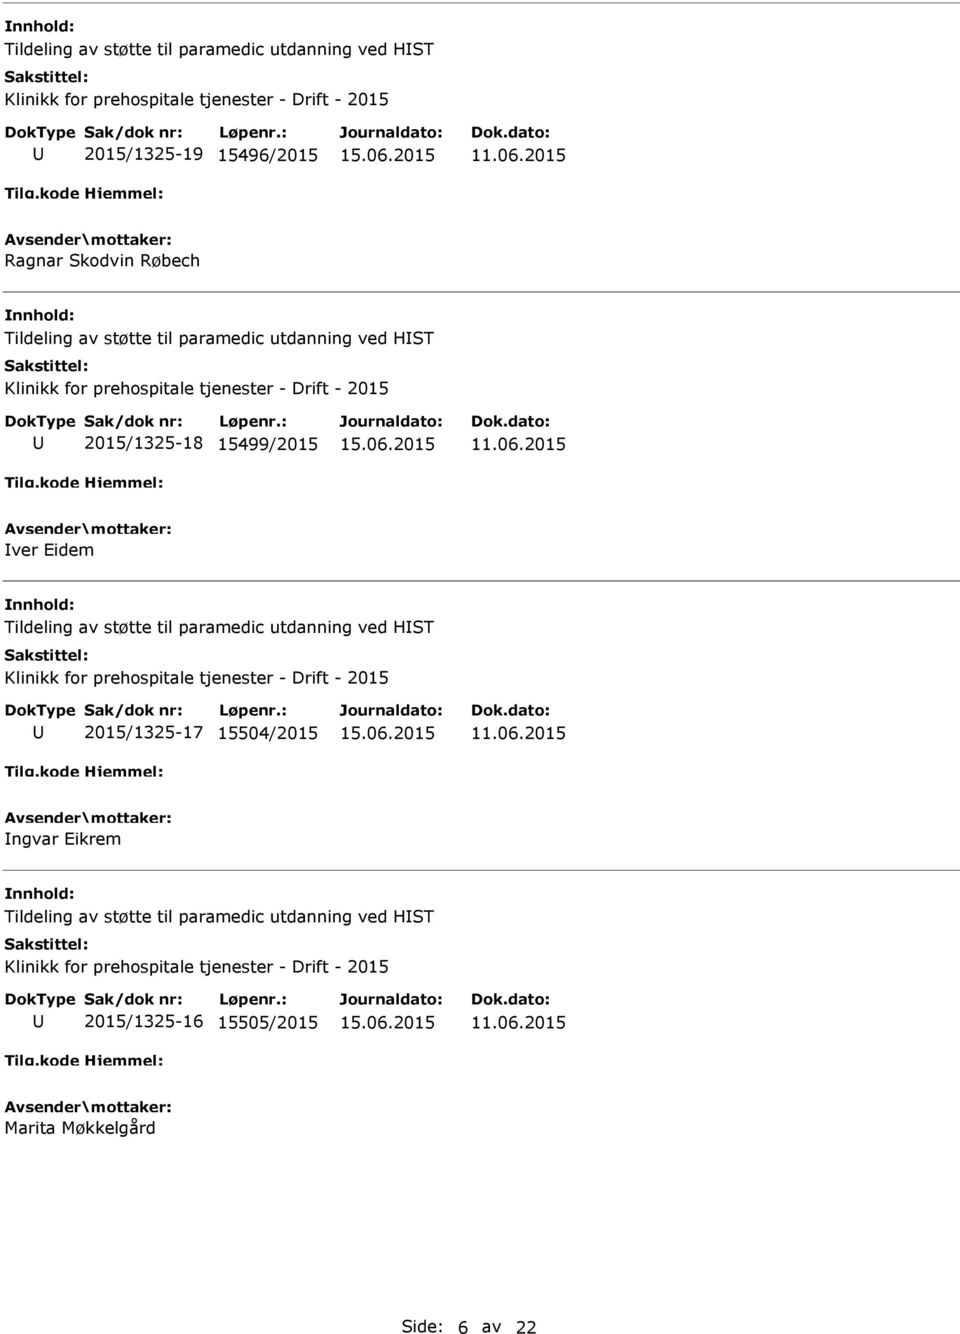 Tildeling av støtte til paramedic utdanning ved HST Klinikk for prehospitale tjenester - Drift - 2015 2015/1325-17 15504/2015 ngvar Eikrem